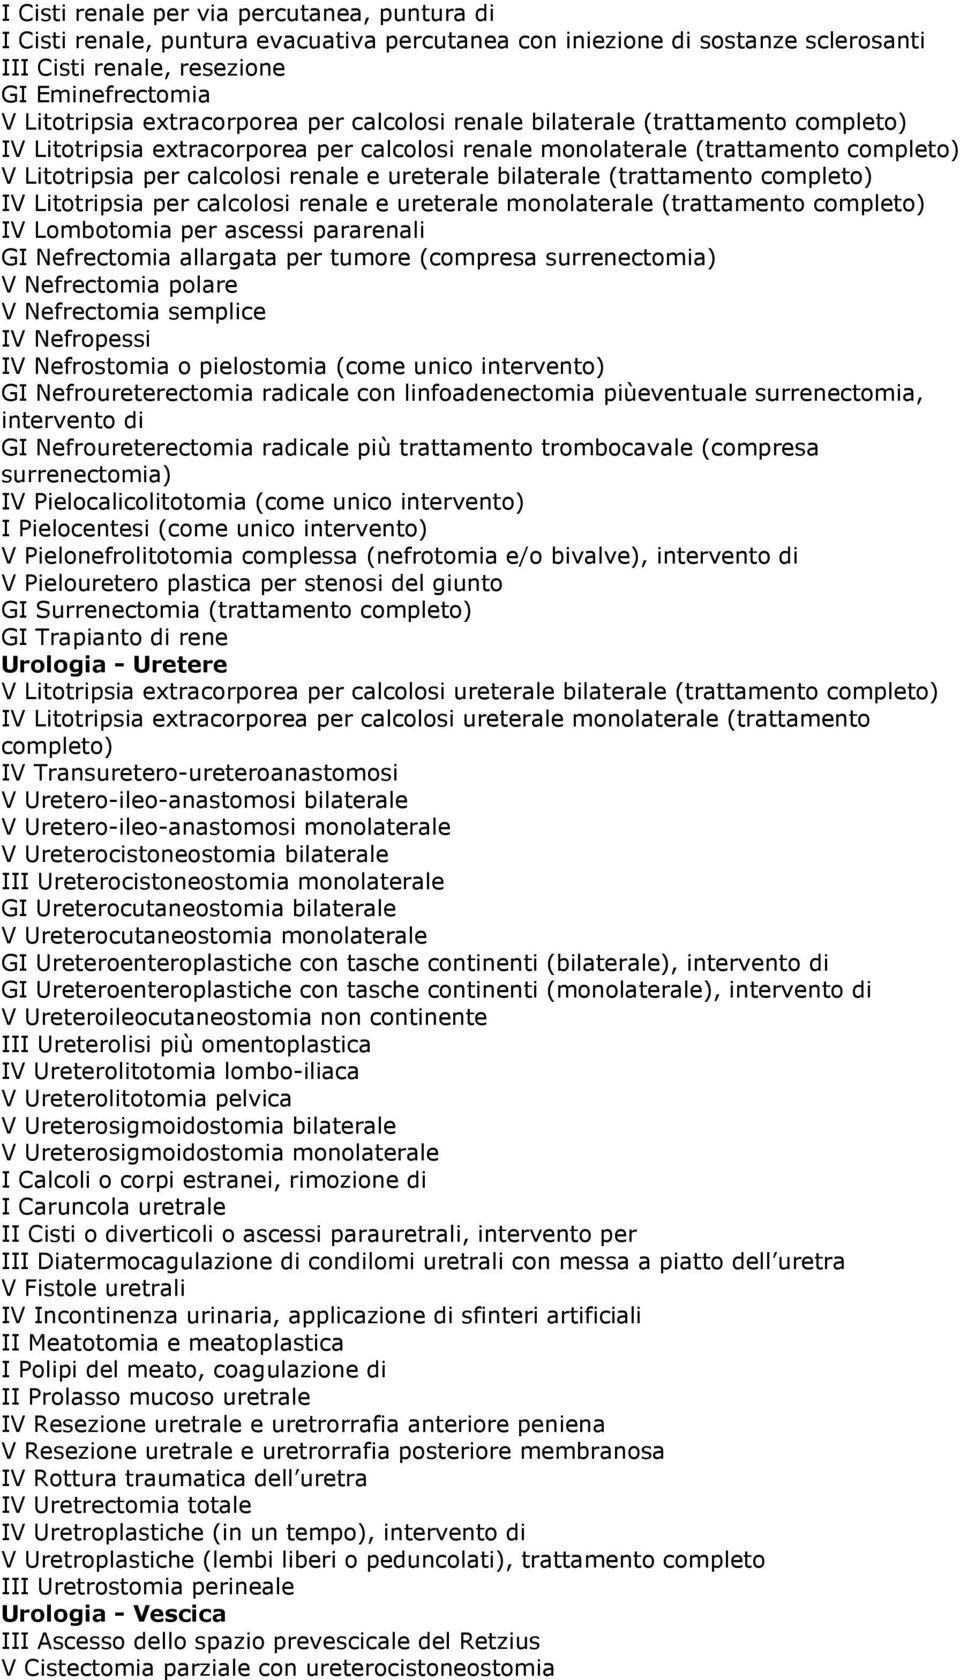 ureterale bilaterale (trattamento completo) IV Litotripsia per calcolosi renale e ureterale monolaterale (trattamento completo) IV Lombotomia per ascessi pararenali GI Nefrectomia allargata per